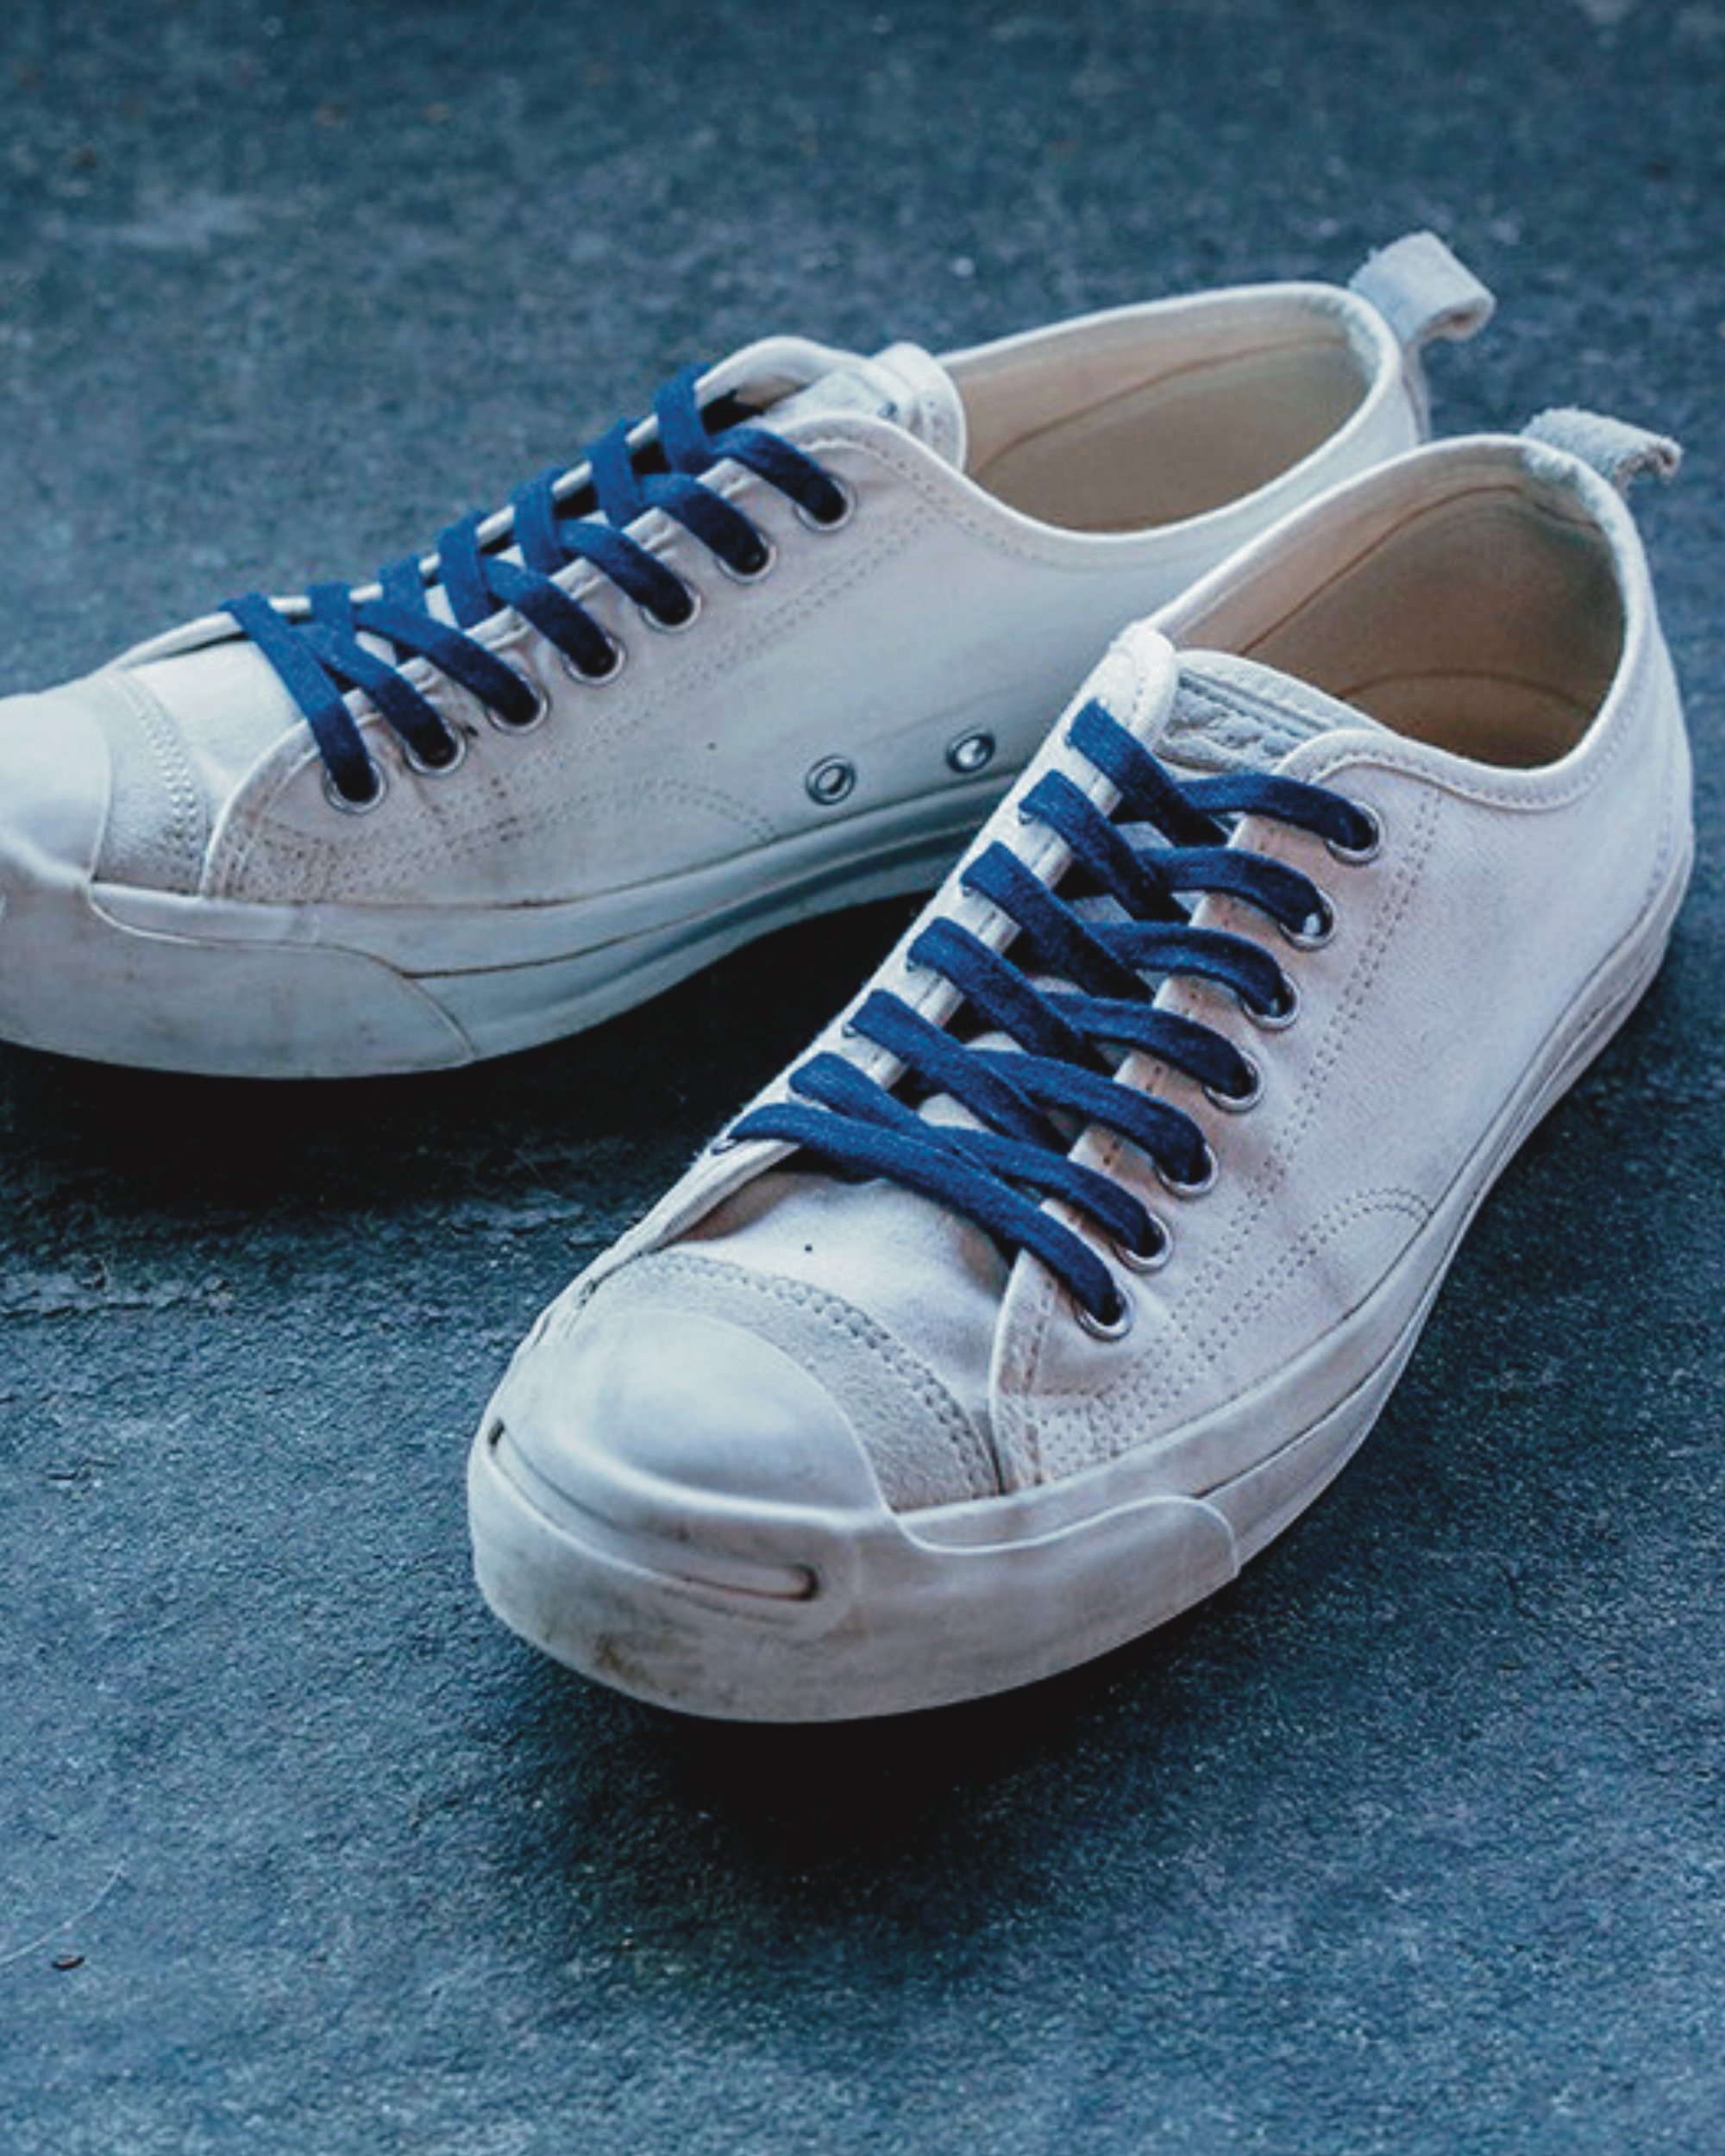 buaisou : flat indigo shoelaces